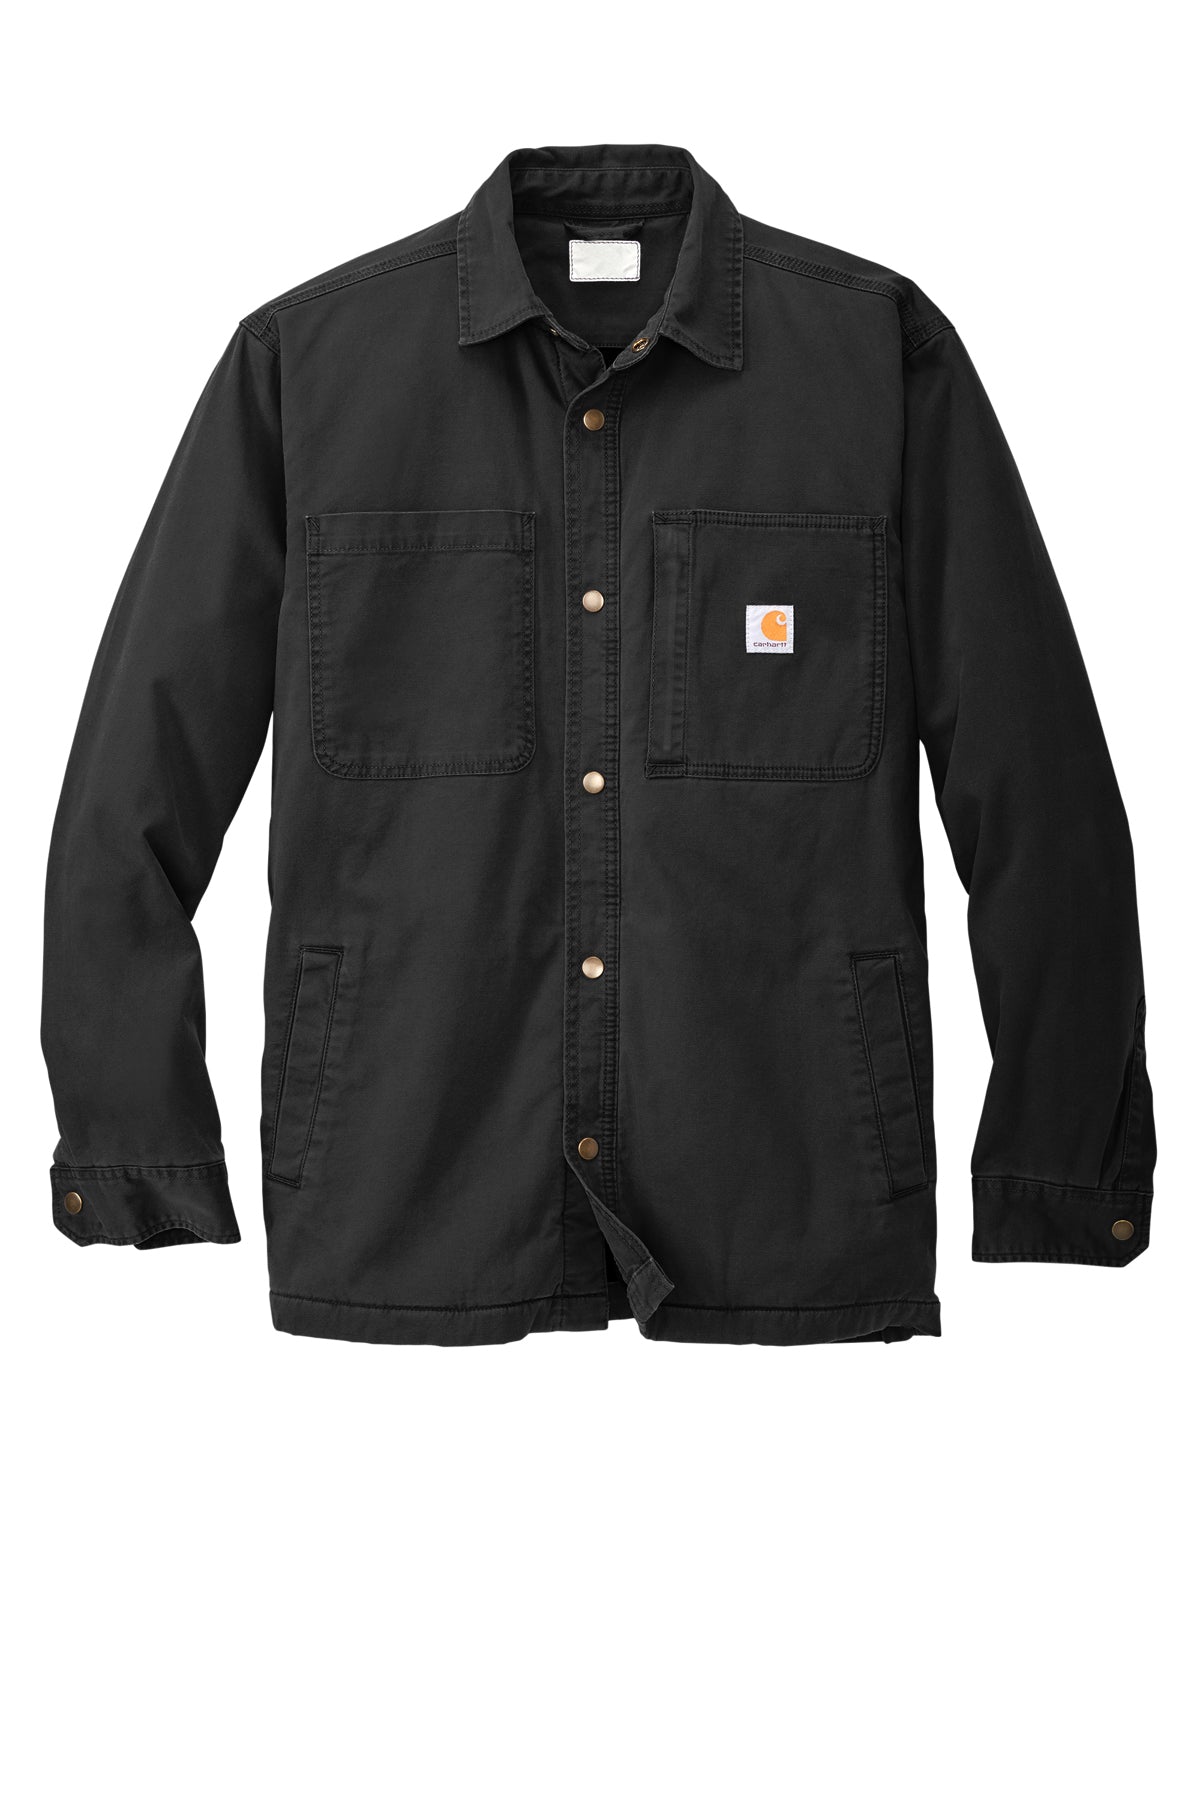 Carhartt® - Rugged Flex® Fleece-Lined Shirt Jac - CT105532